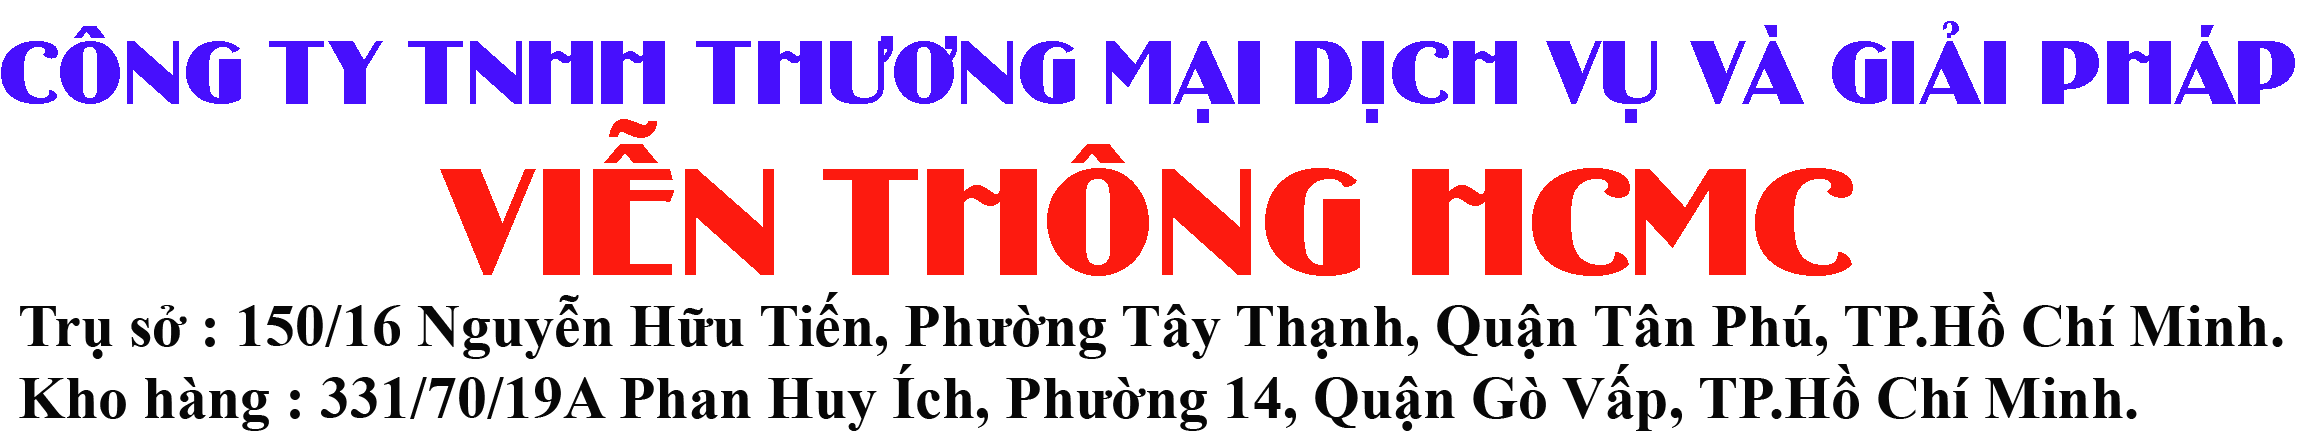 CÔNG TY TNHH THƯƠNG MẠI DỊCH VỤ VÀ GIẢI PHÁP VIỄN THÔNG HCMC